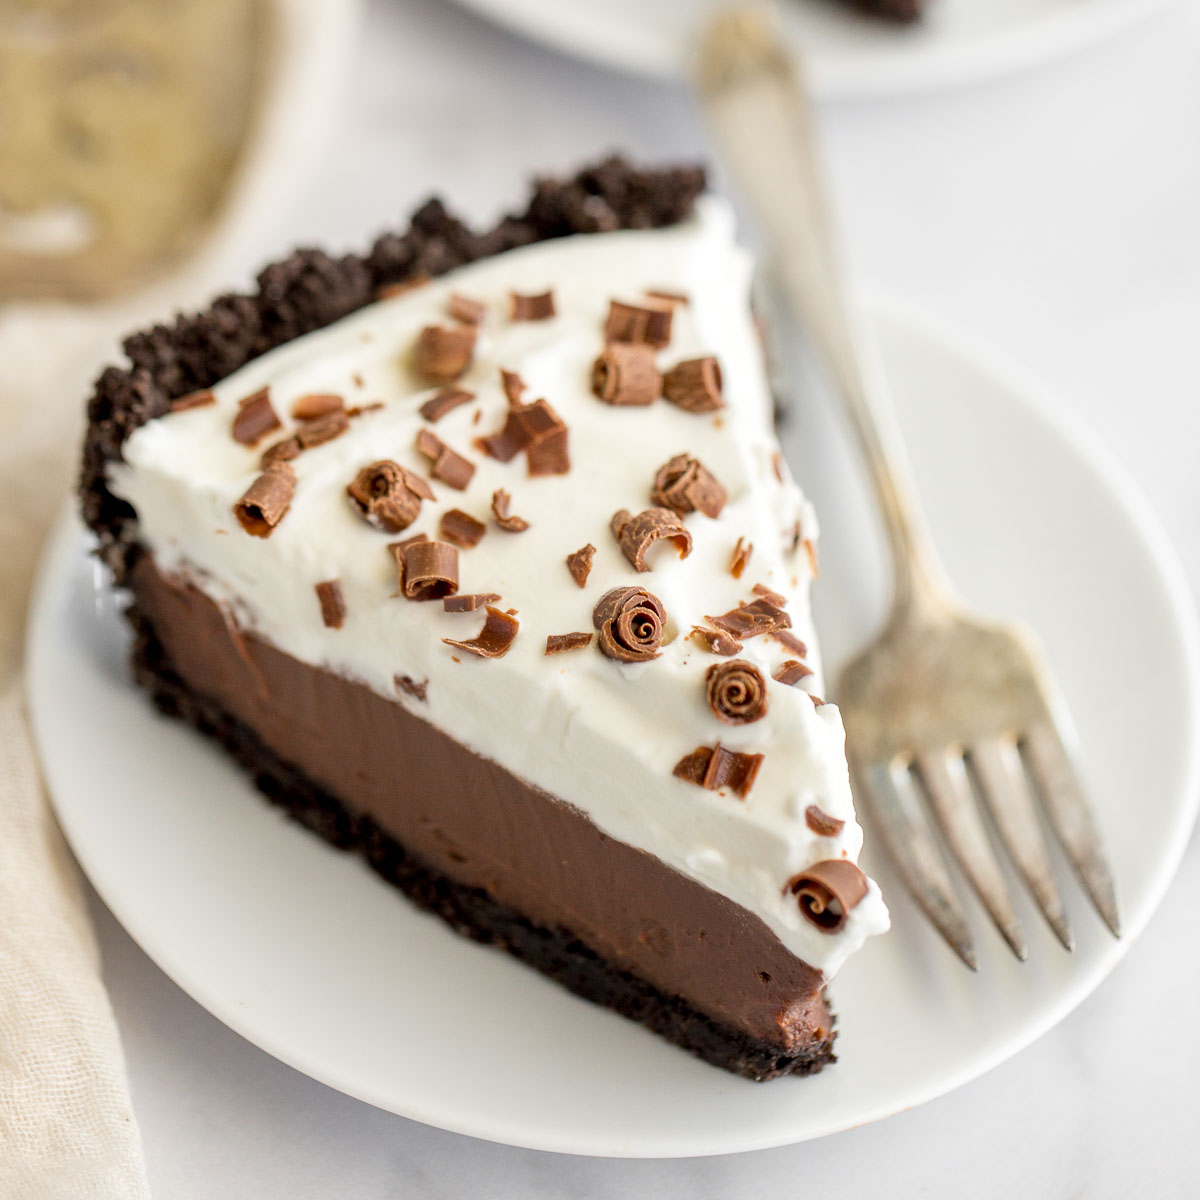 Homemade Chocolate Cream Pie Recipe - Live Well Bake Often